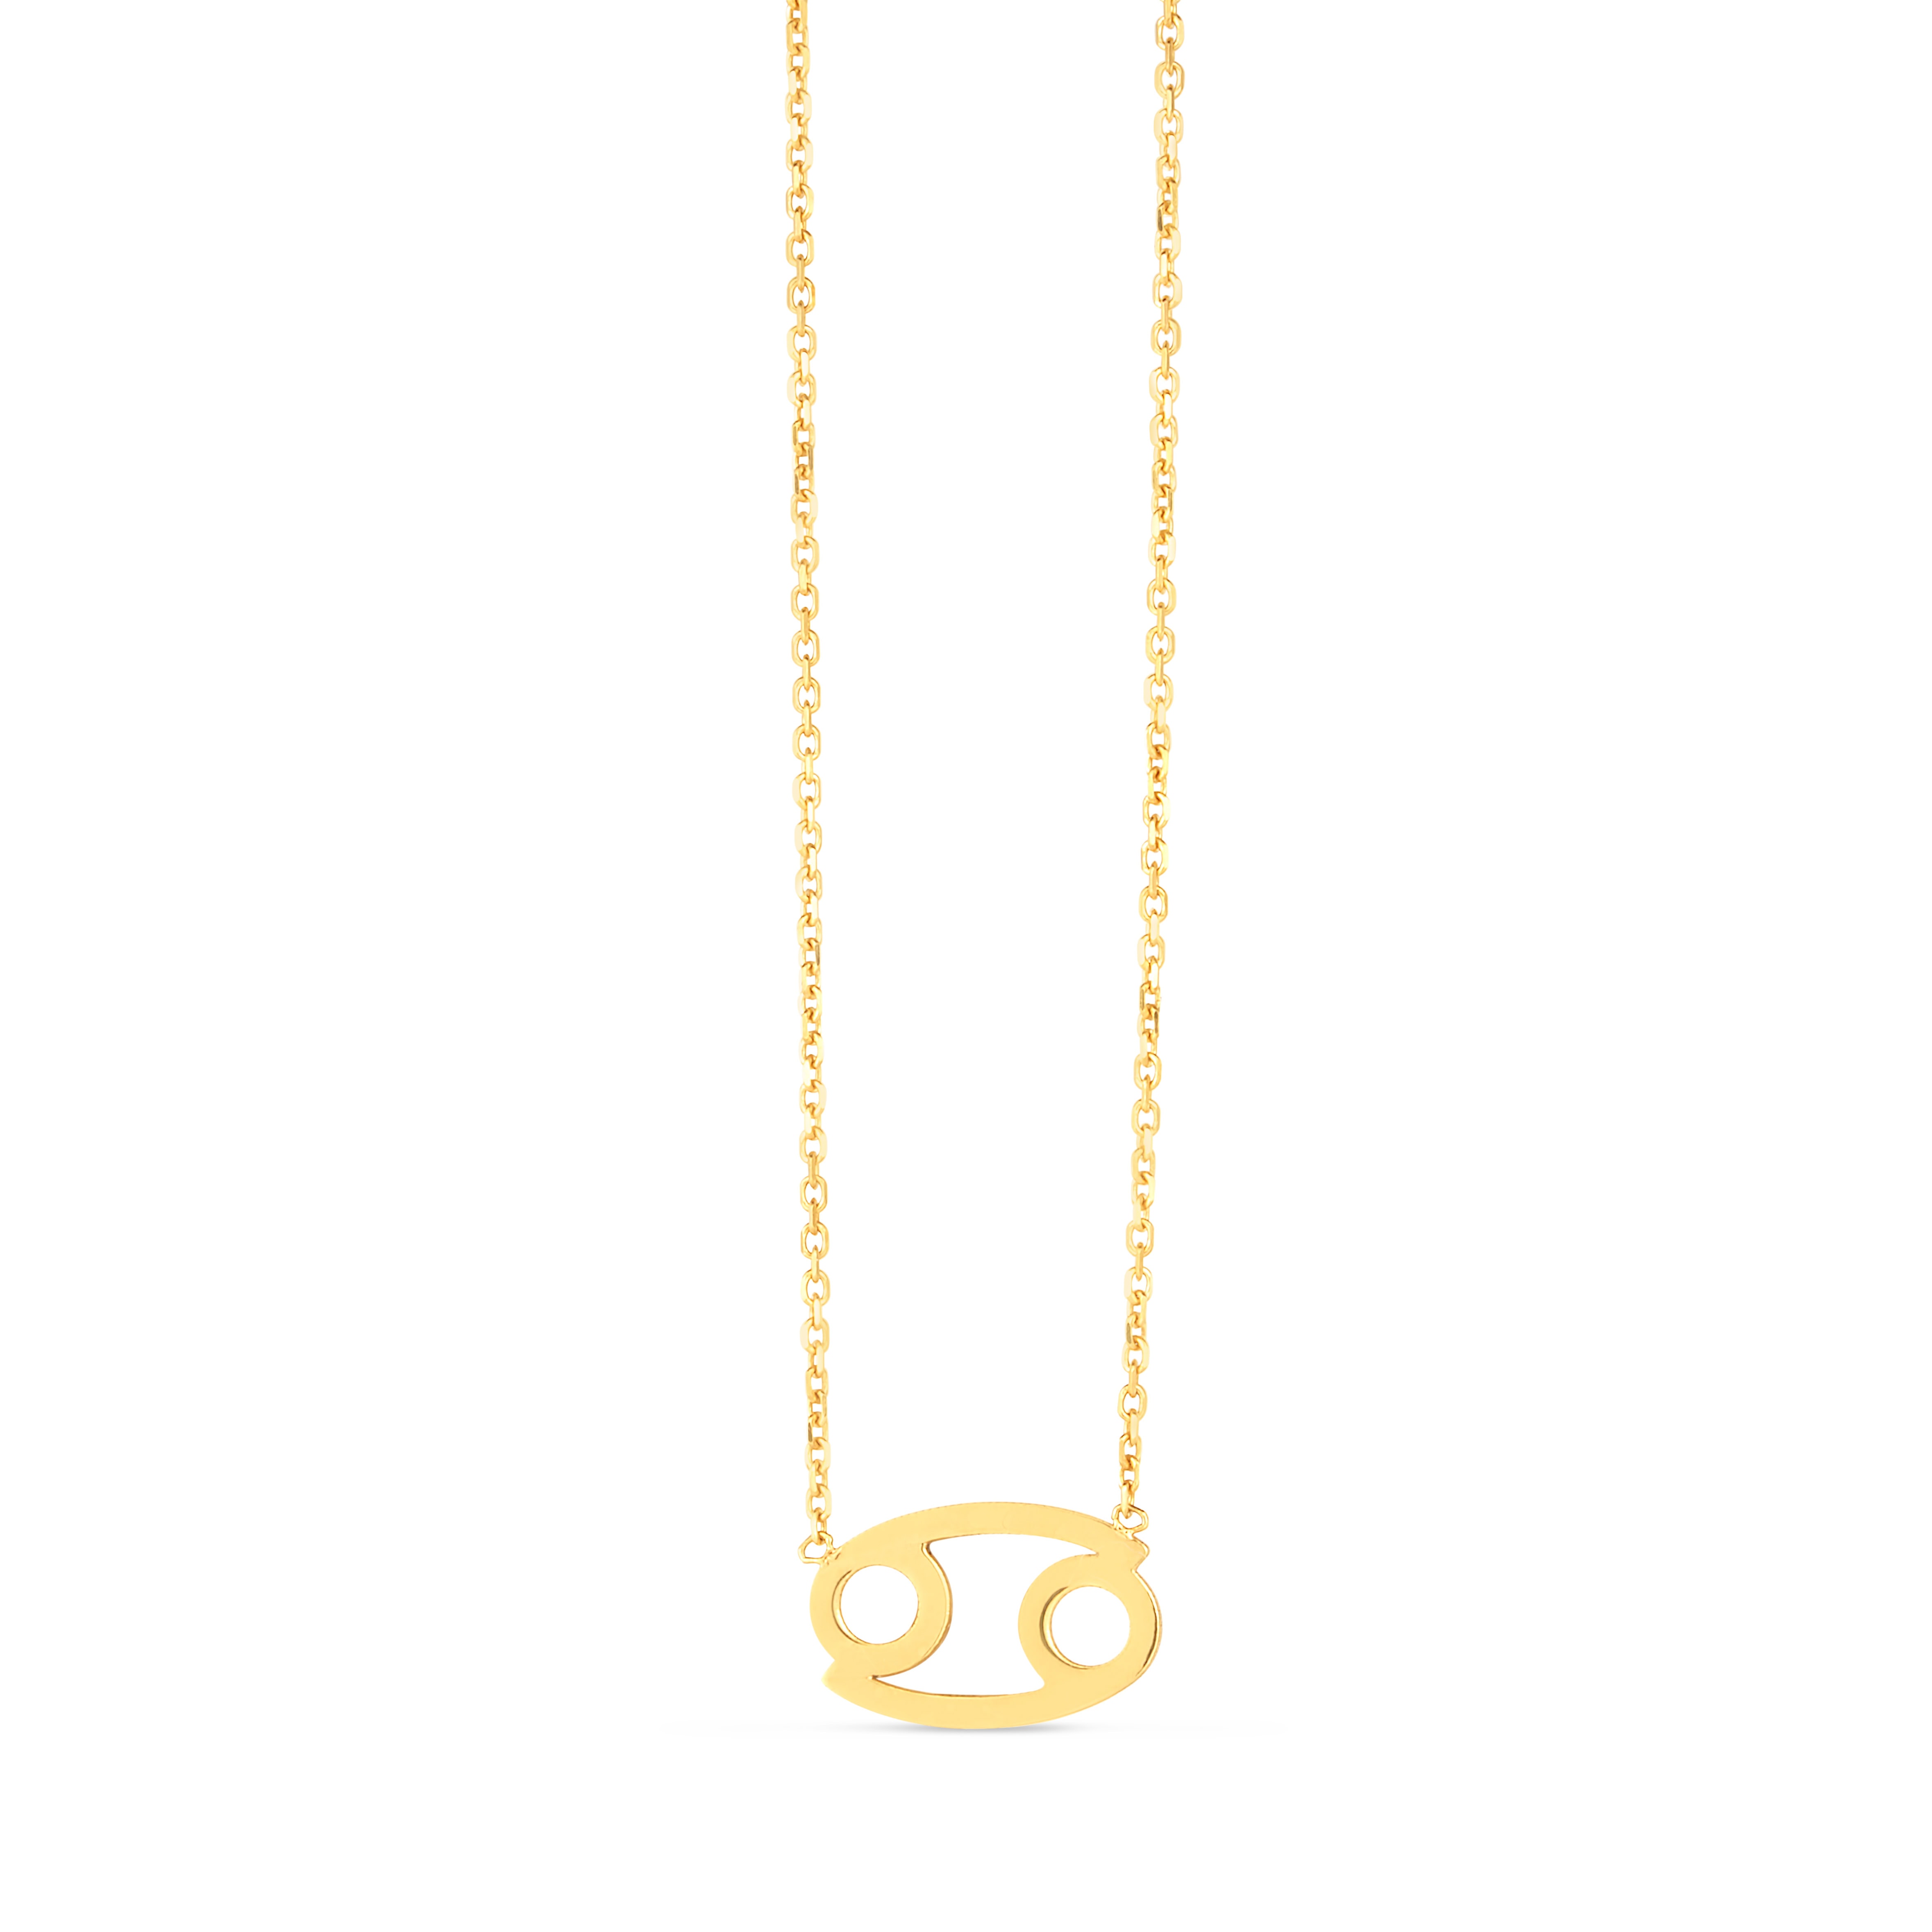 14K Gold Cancer Necklace